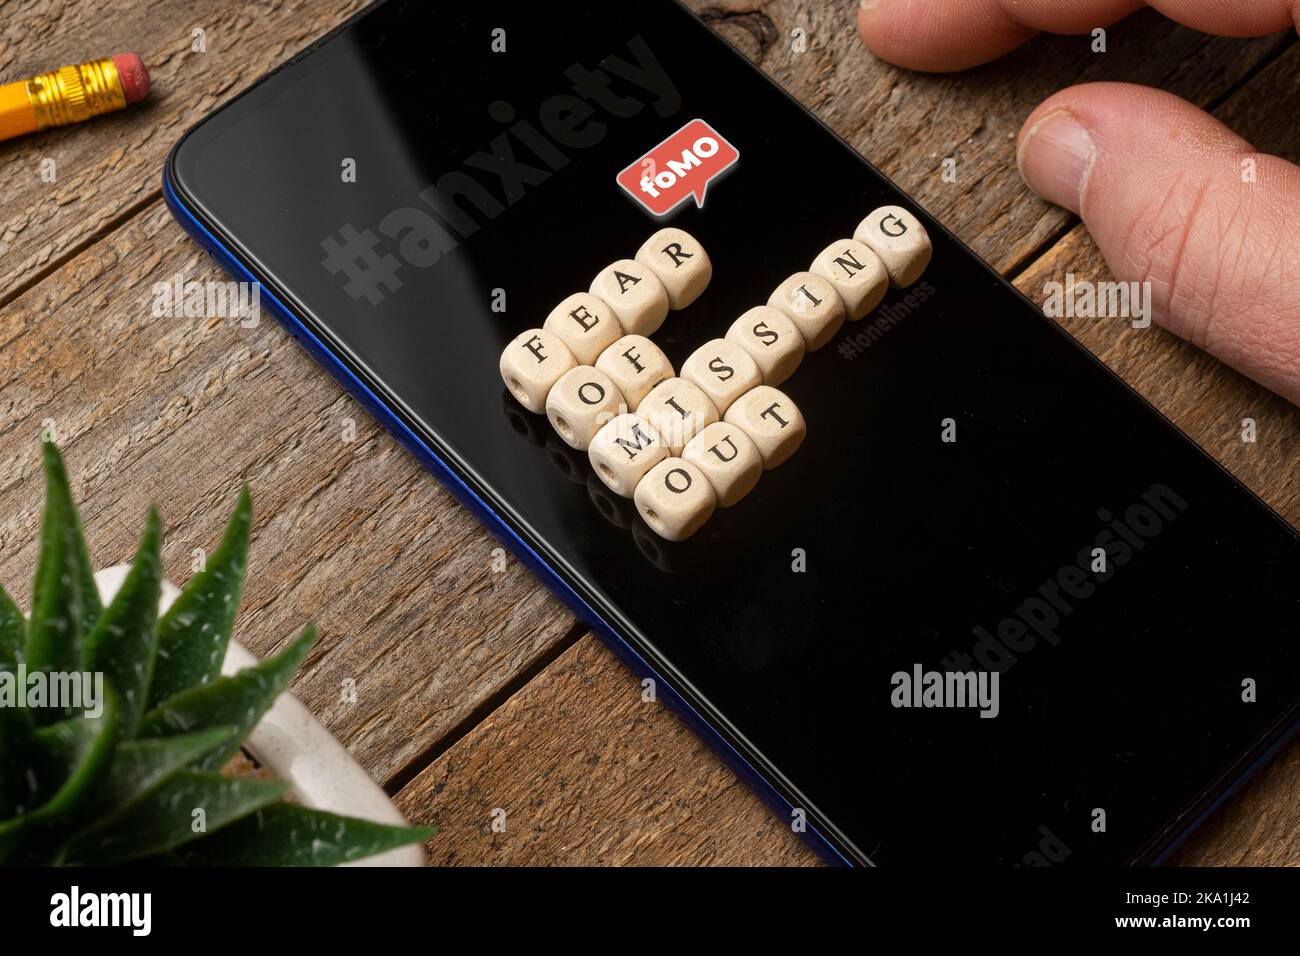 Fear of Missing Out (fomo)-Konzept: Smartphone auf einem Holztisch mit einigen sterben, die einen Satz komponieren. Stockfoto